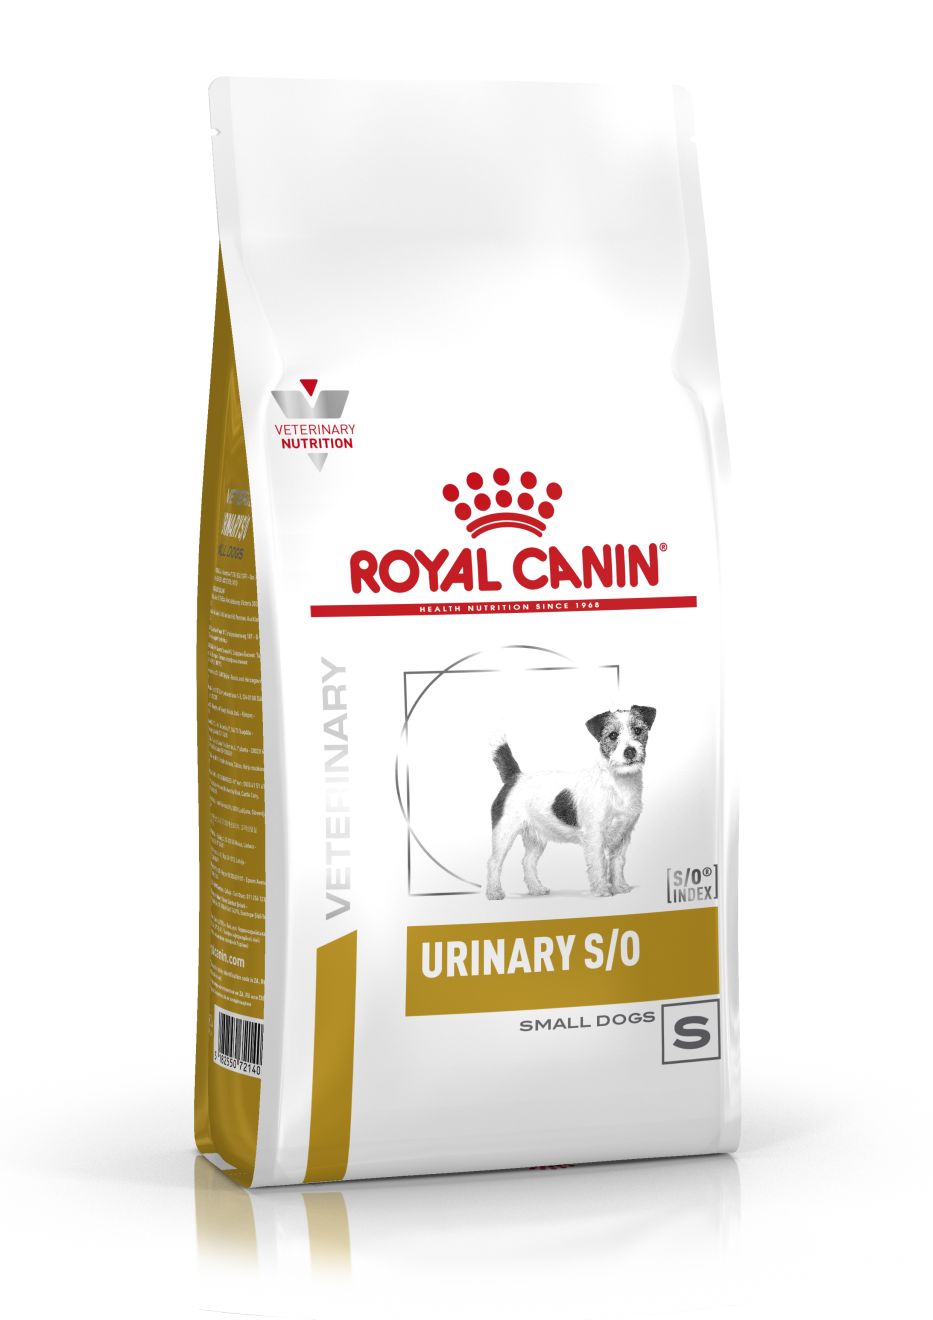 ROYAL CANIN URINARY S/O SMALL DOG – лечебный сухой корм для собак маленьких пород с мочекаменной болезнью